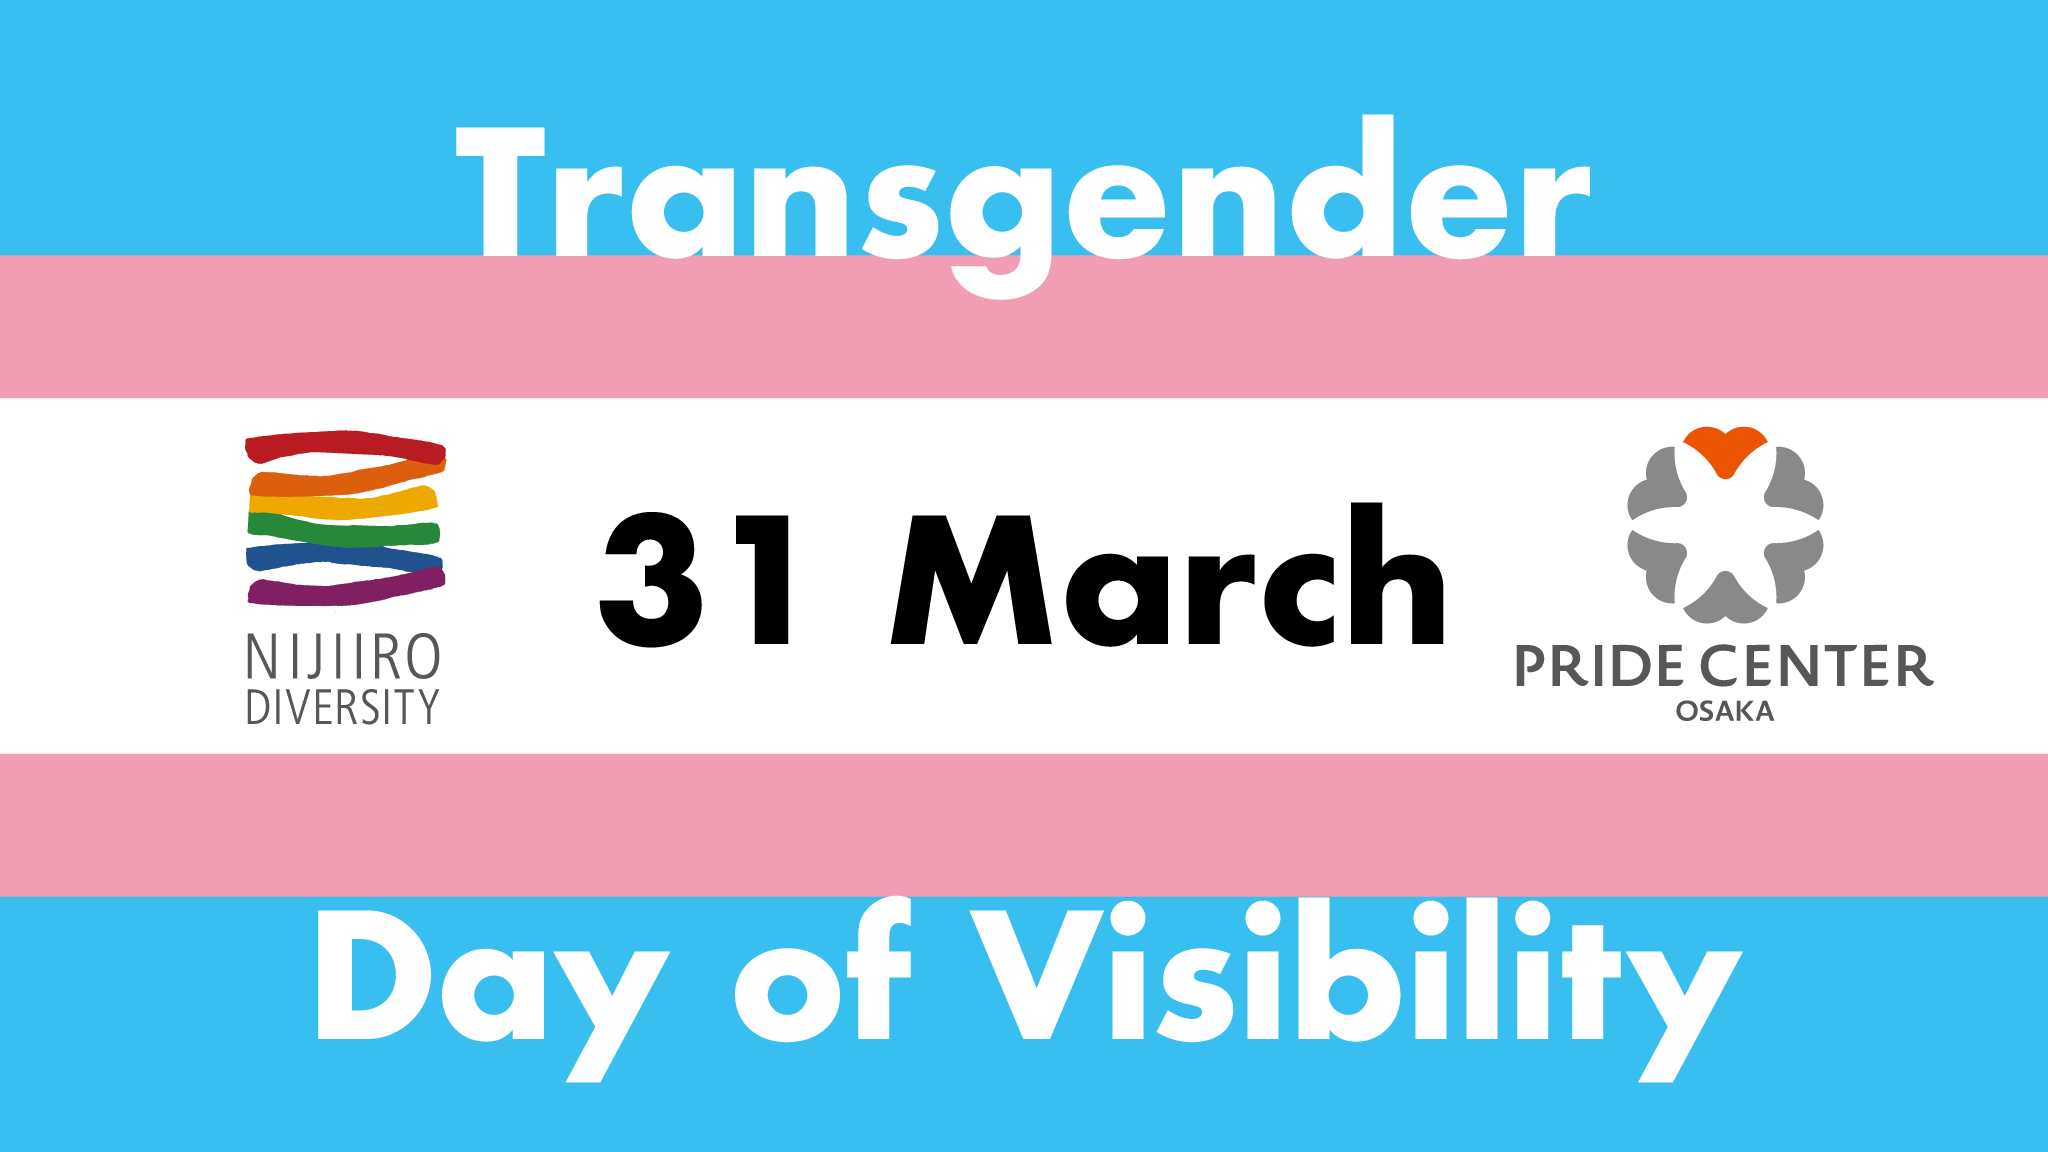 トランスジェンダー可視化の日